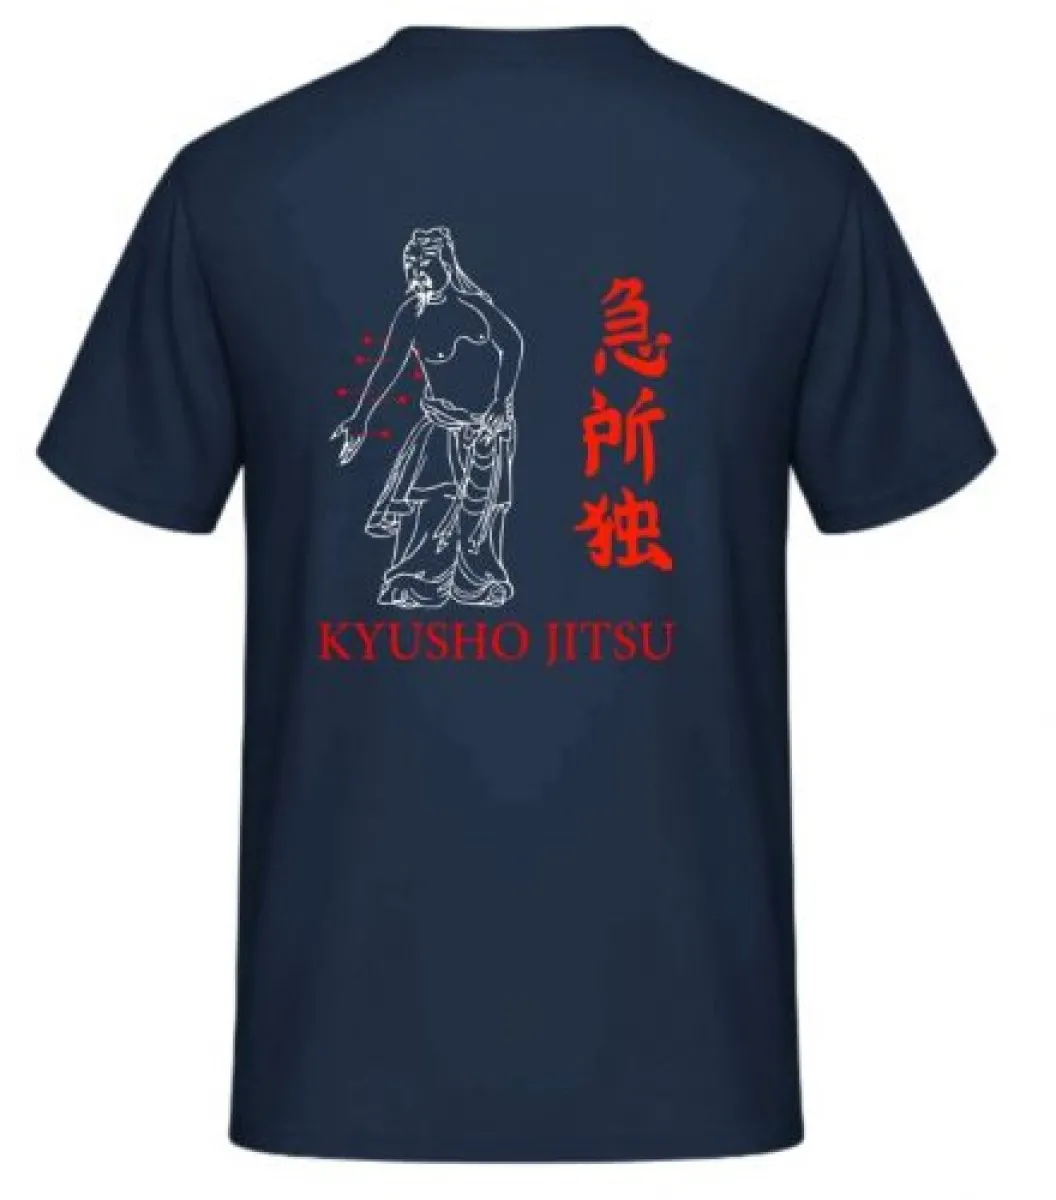 Ladies T-shirt dark blue with Kyusho print